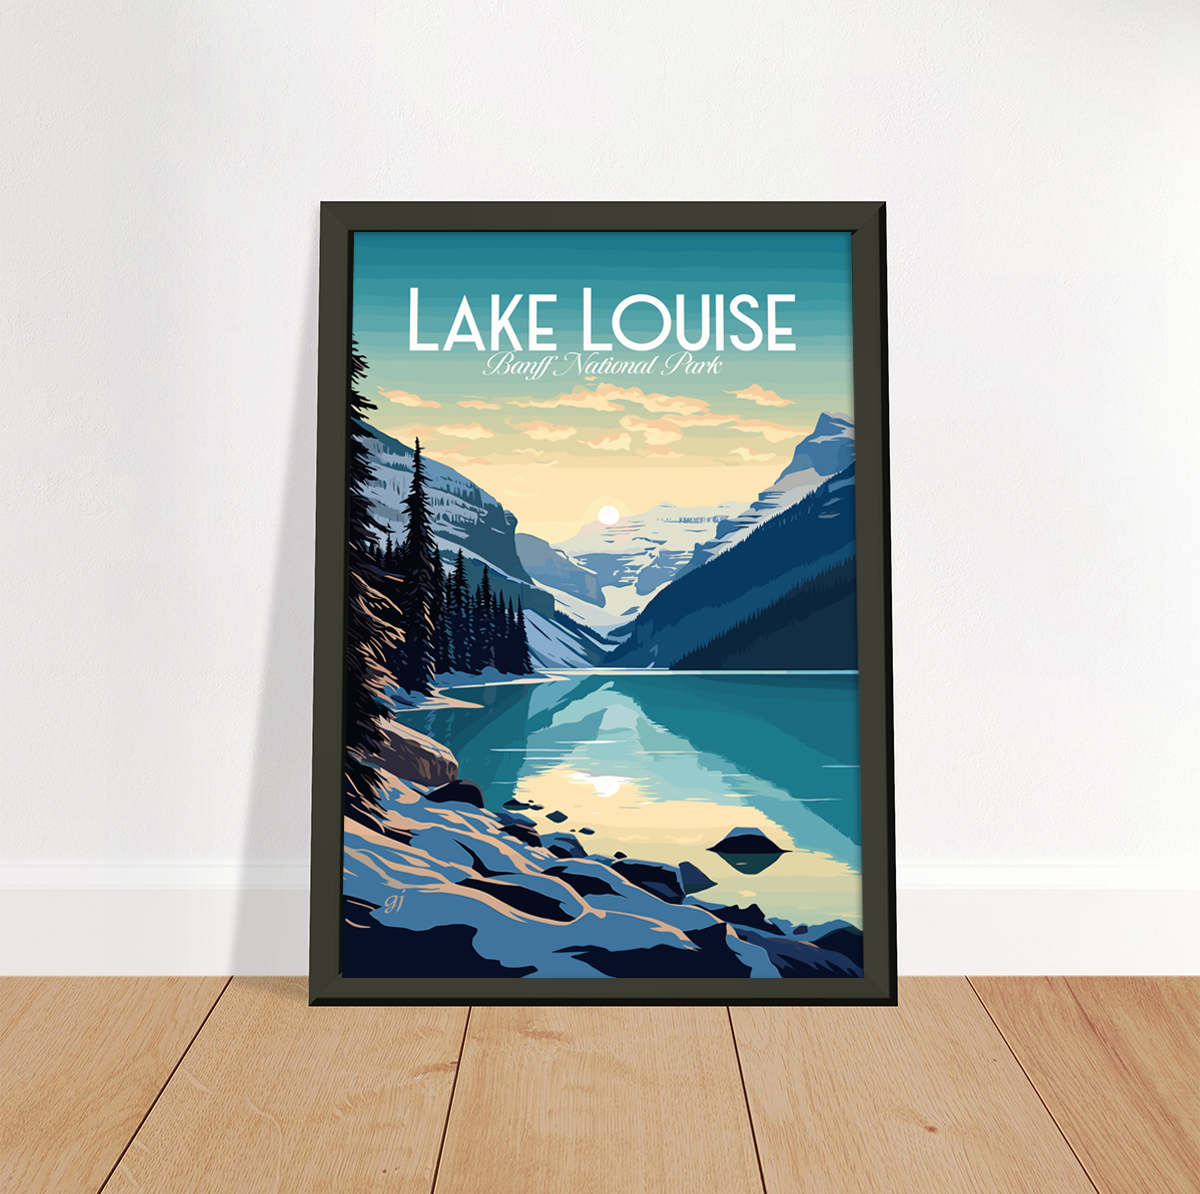 Lake Louise poster by bon voyage design